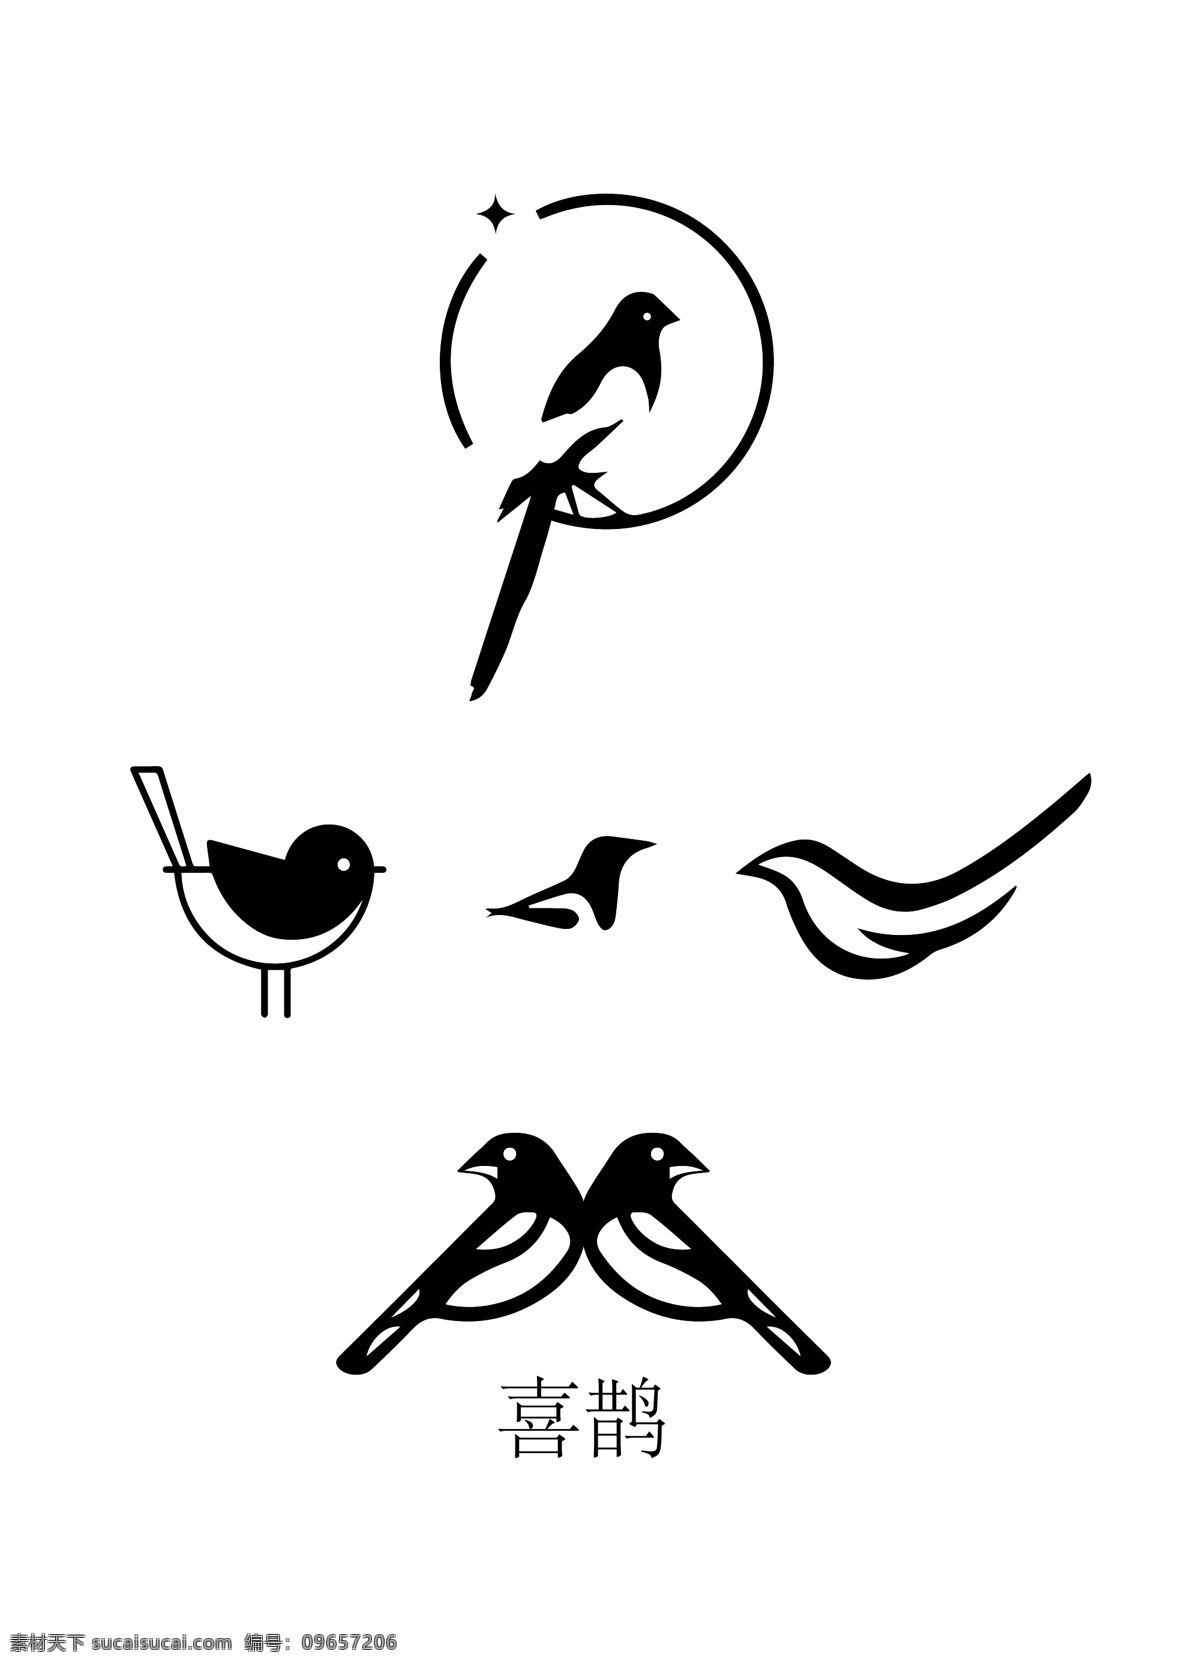 喜鹊图片 喜鹊 鸟 简化logo 小鸟 简化 文化艺术 传统文化